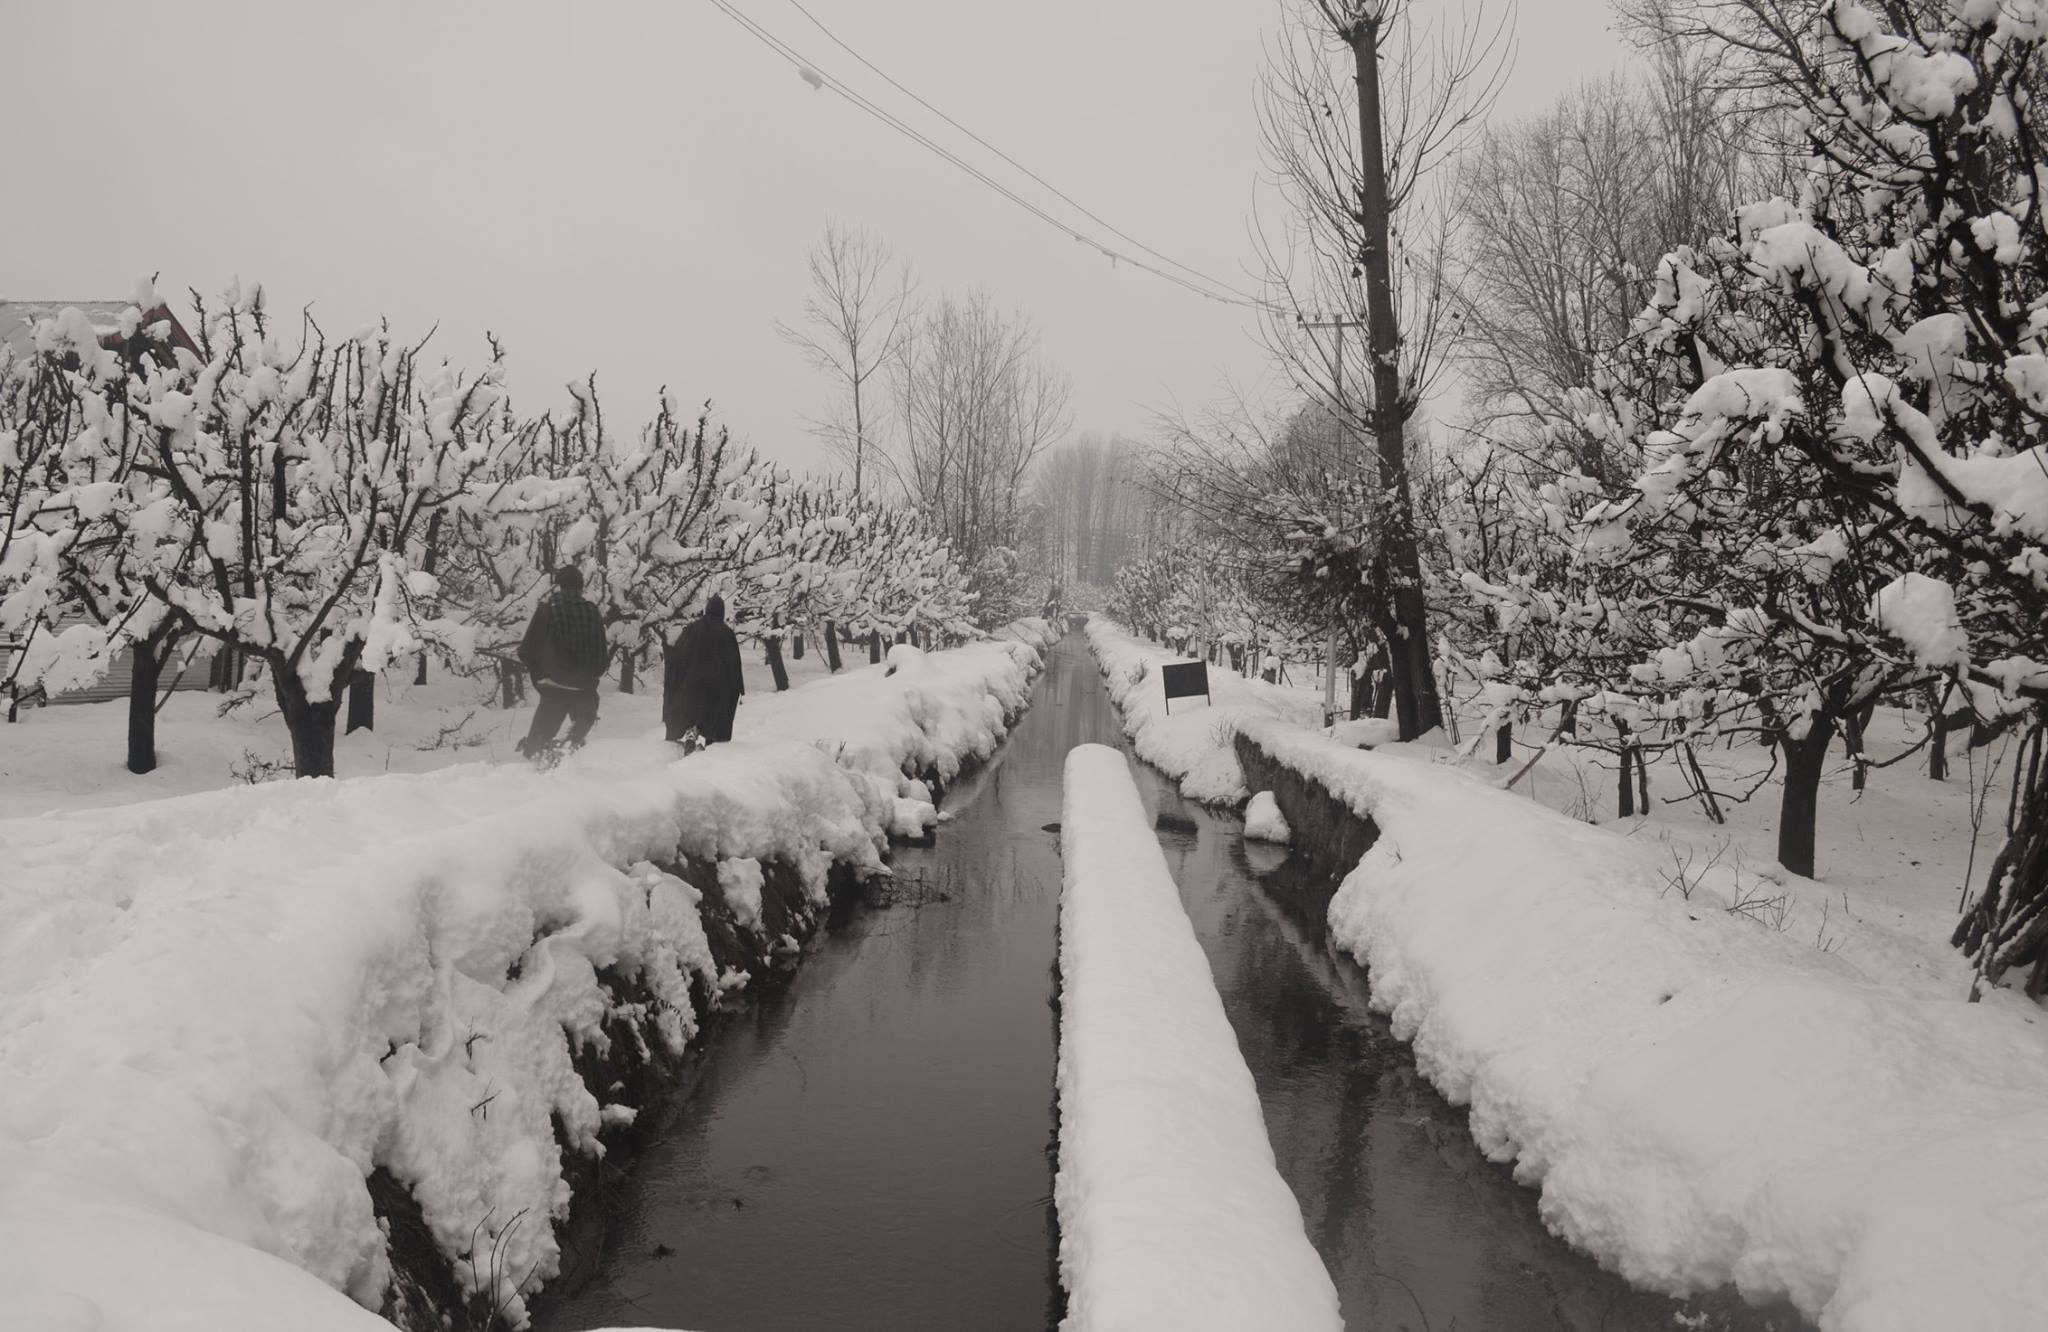 Winter weather in Kashmir